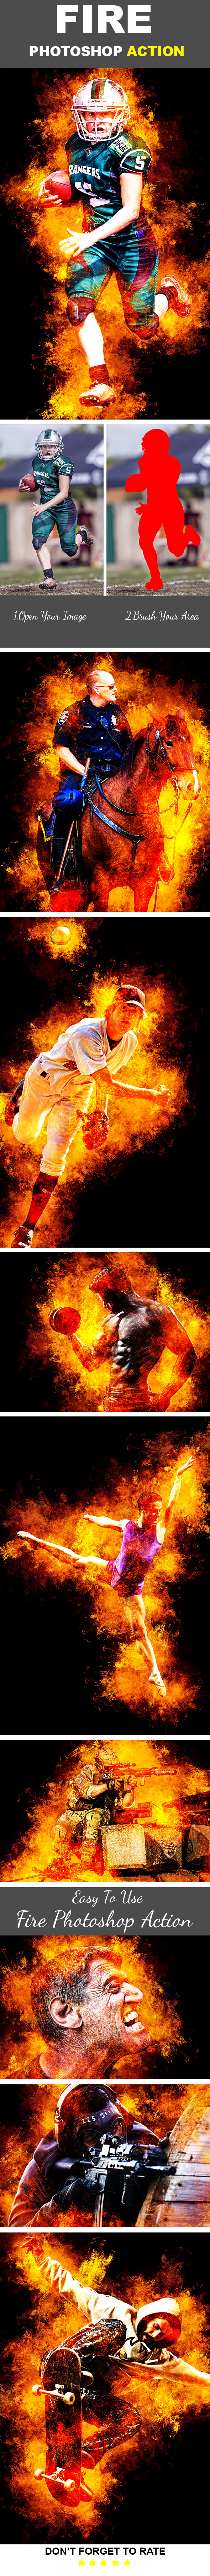 酷炫的照片火焰处理效果Photoshop动作 Fire Photoshop Action插图